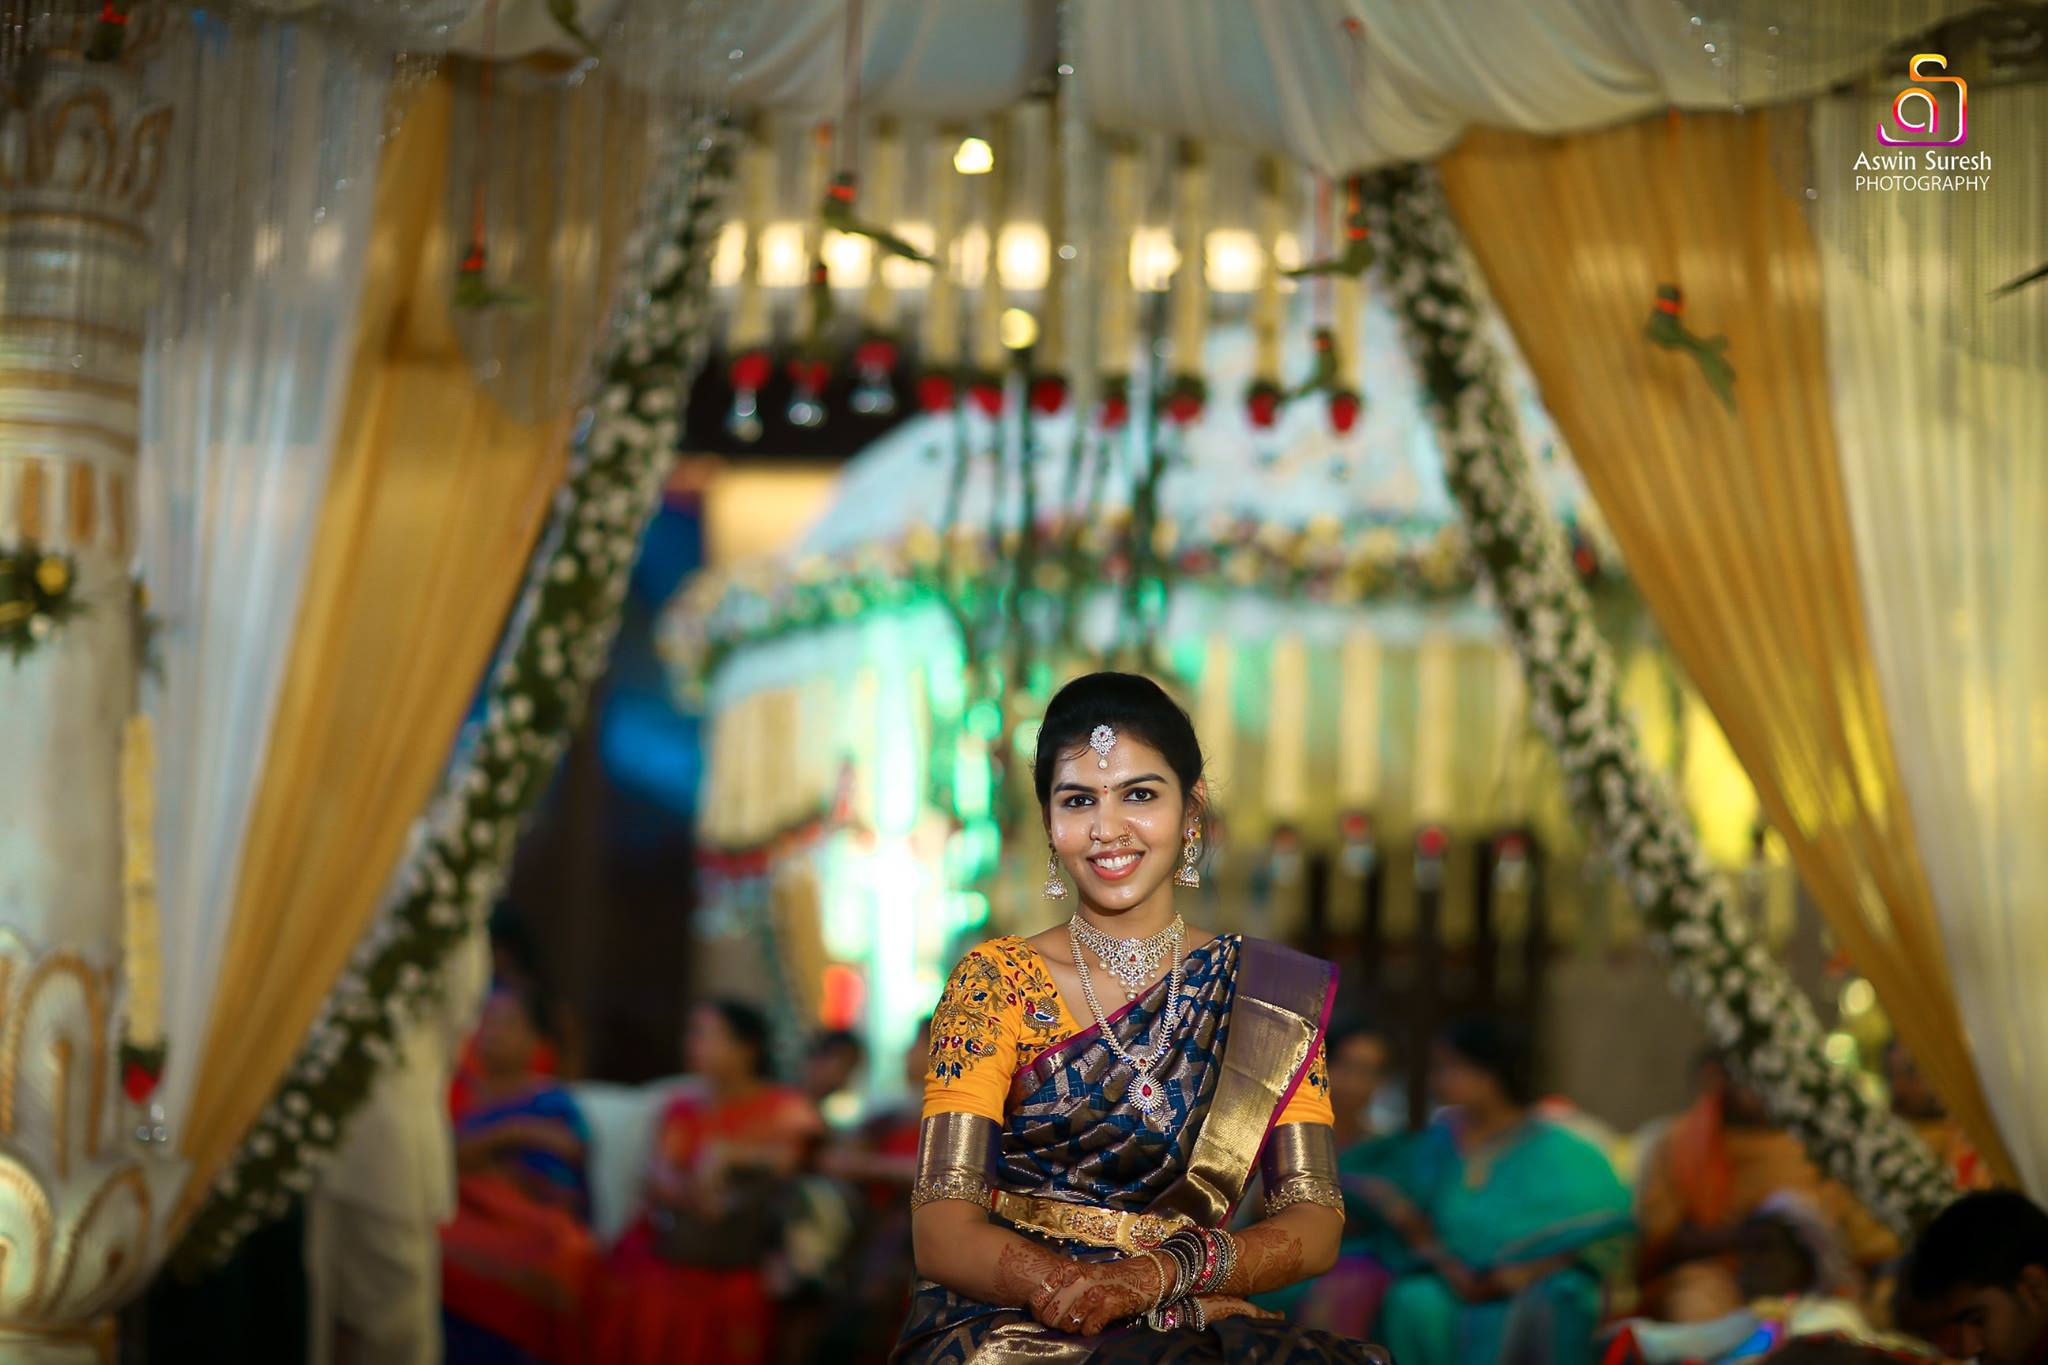  Wedding Images of Ashwin Suresh Photography-img5